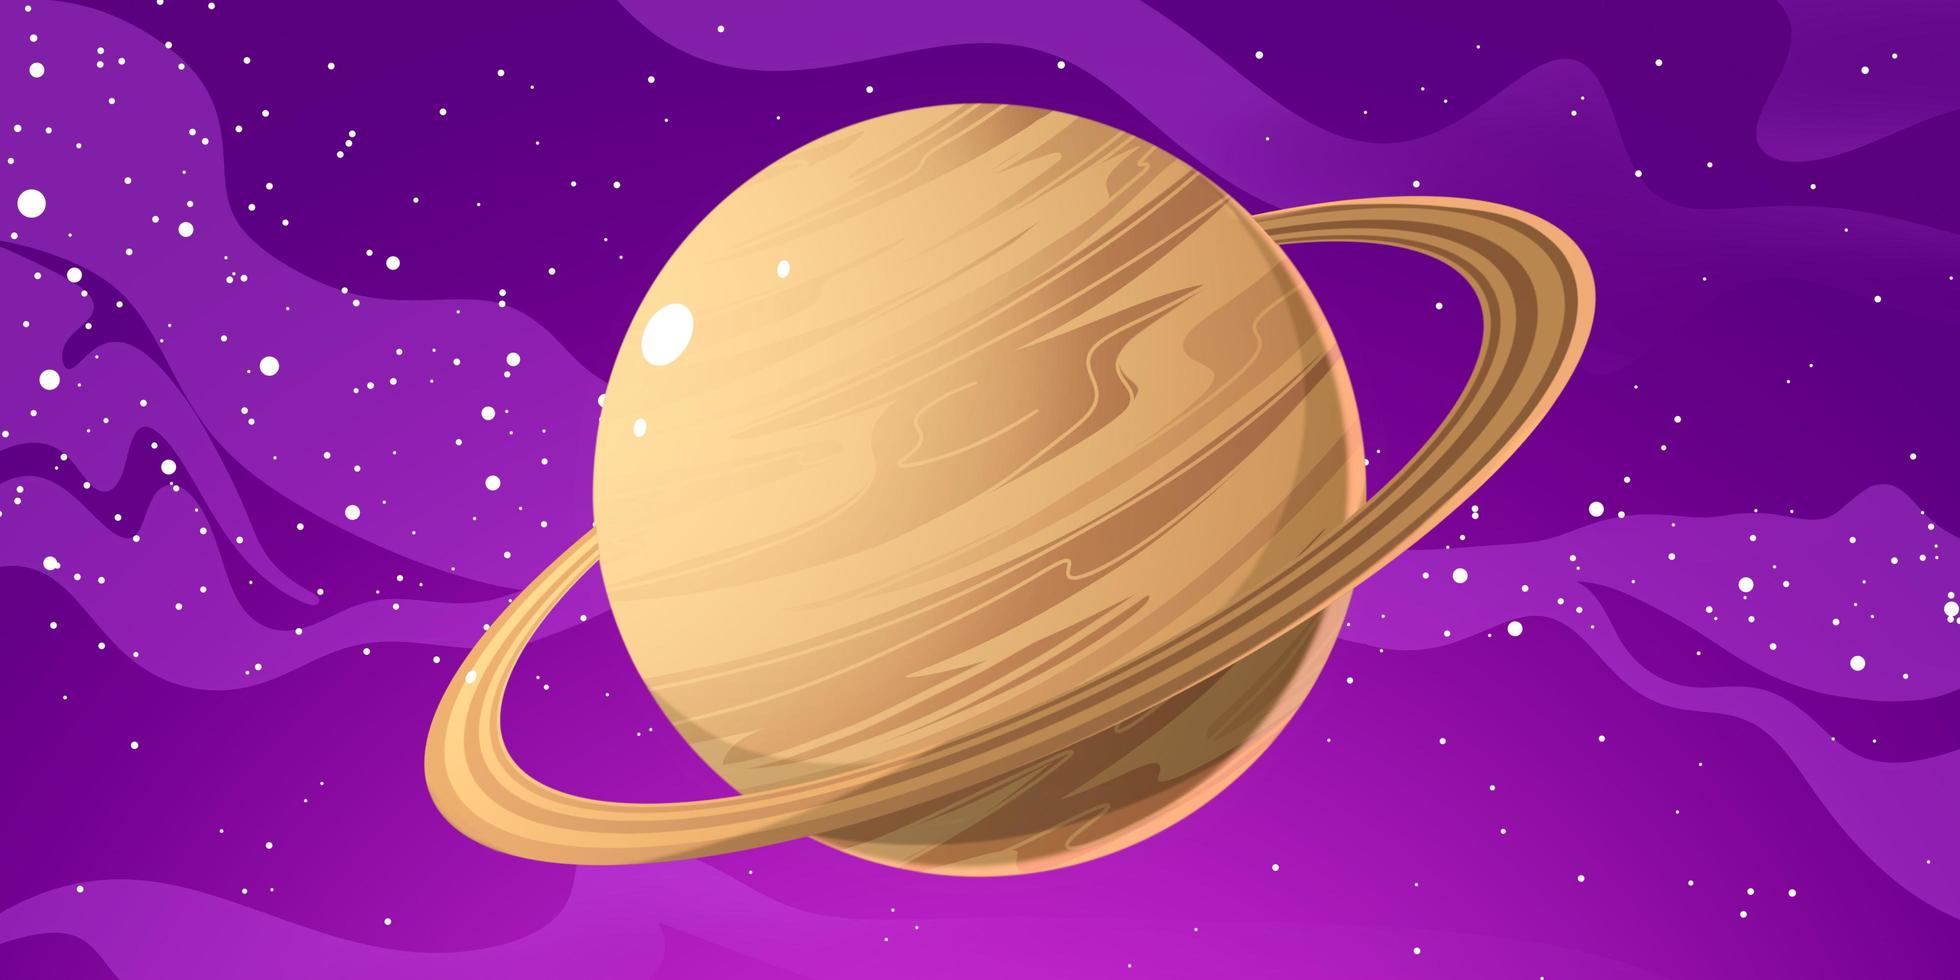 saturnus planet illustration. Saturnus är den näst största planeten efter Jupiter i solsystemet. saturnus har en magnifik ring så saturnus ser så vacker ut foto